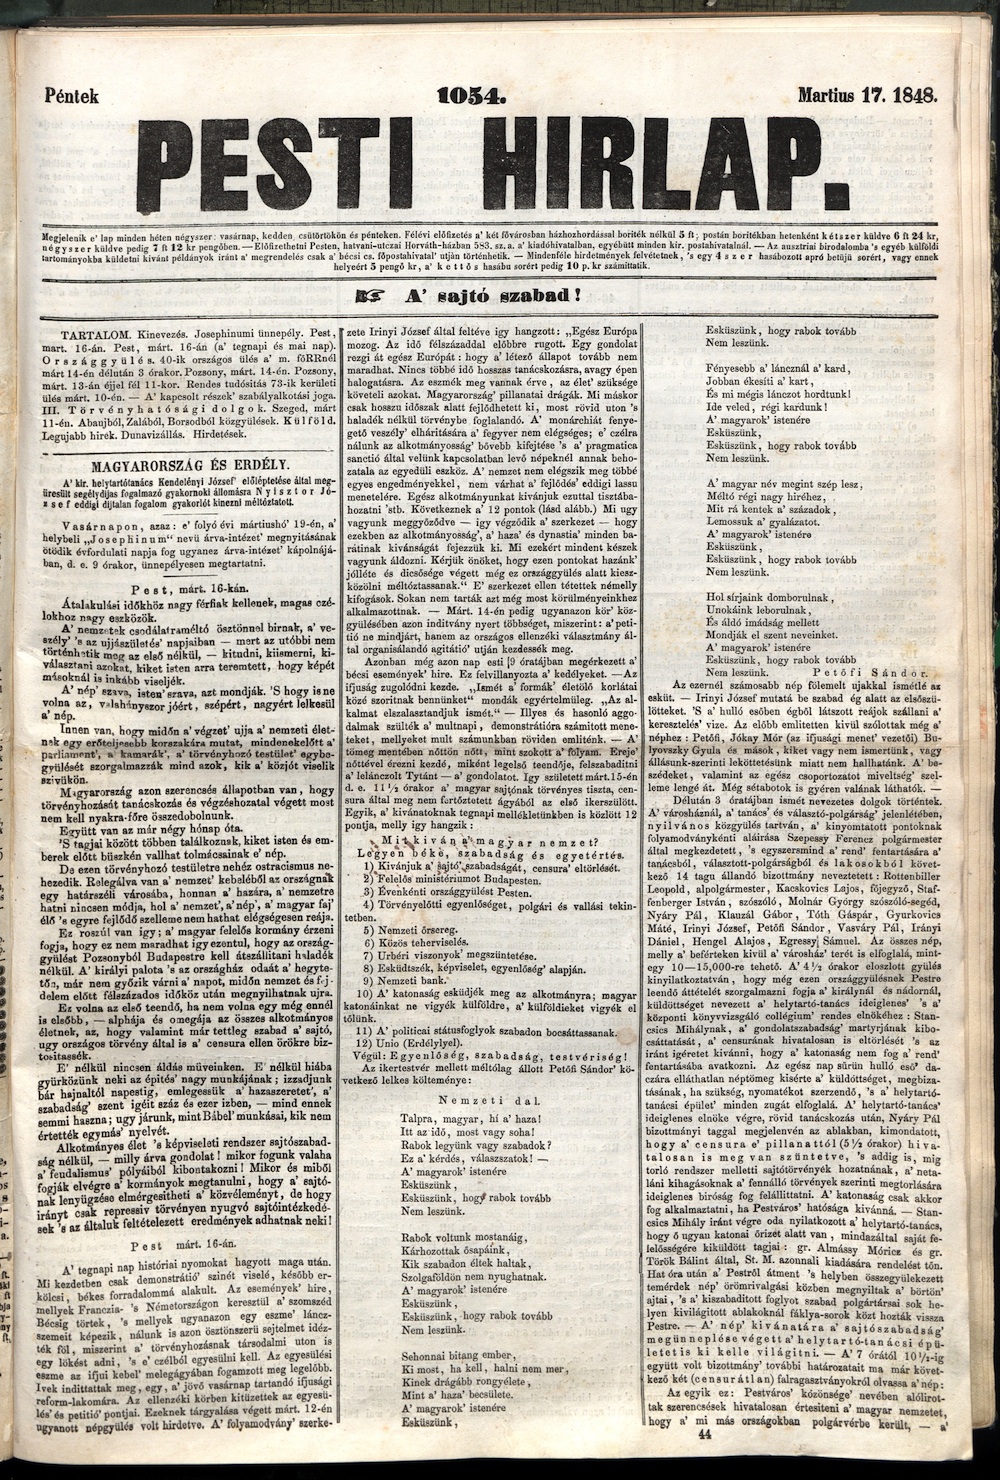 Pesti Hírlap, 1848. március 17. 1055. sz. – Törzsgyűjtemény 